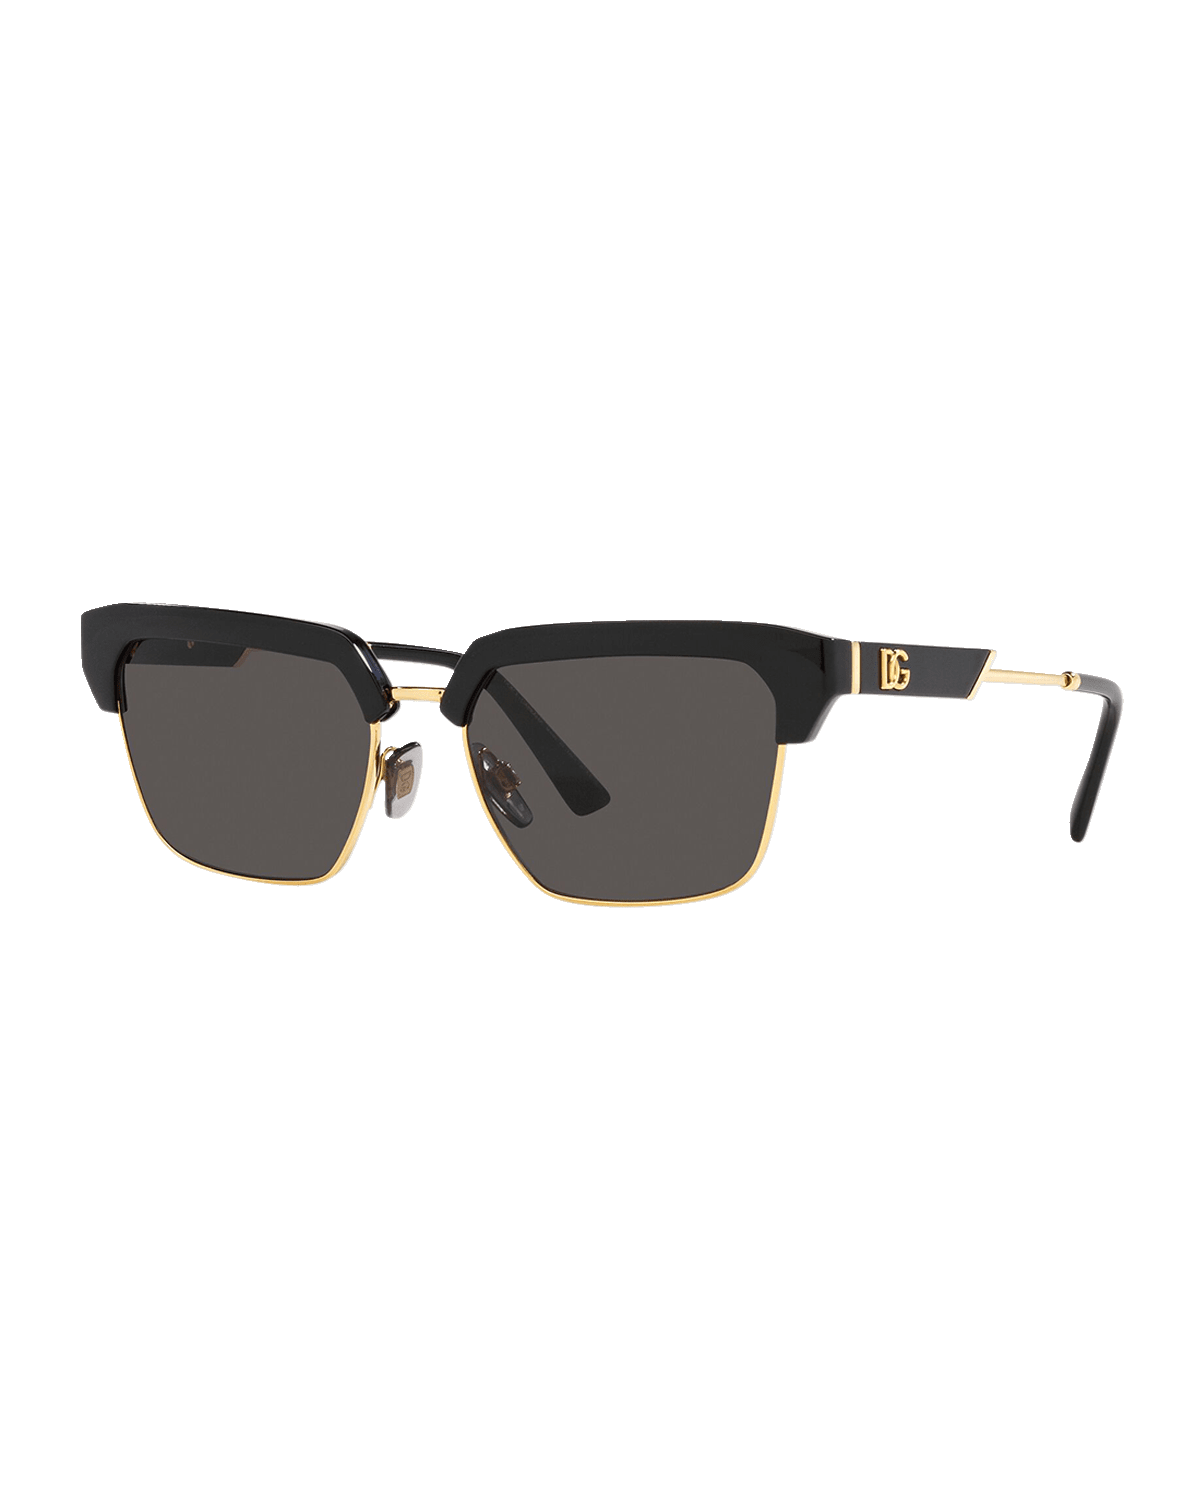 Saint Laurent Men's SL 280 Double-Bridge Sunglasses, Silver